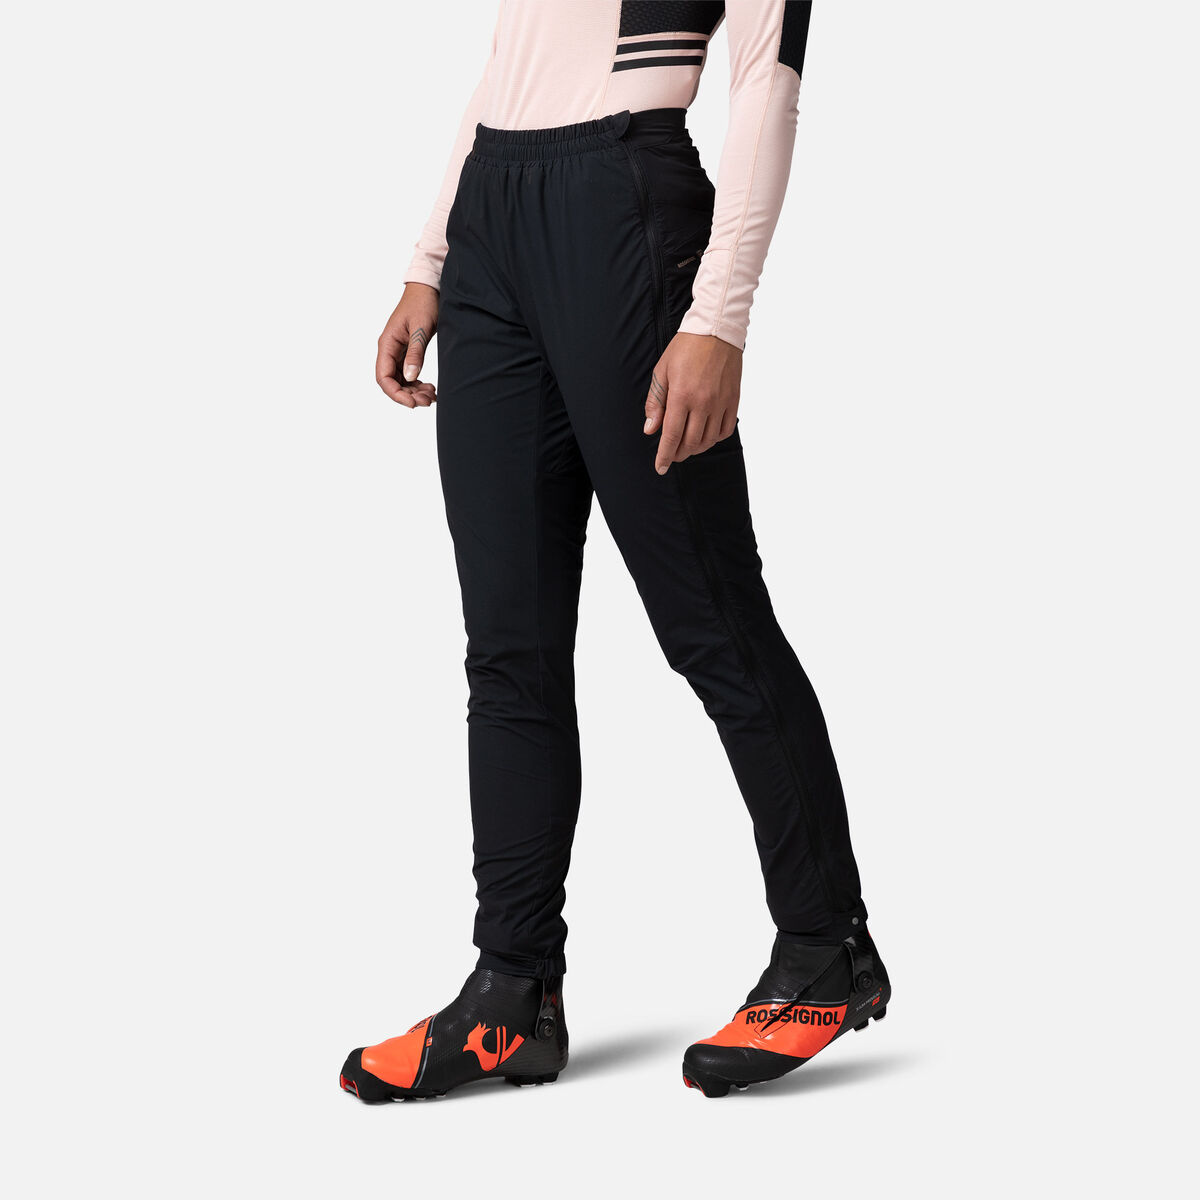 Rossignol Women's Active Versatile XC Ski Pants Black